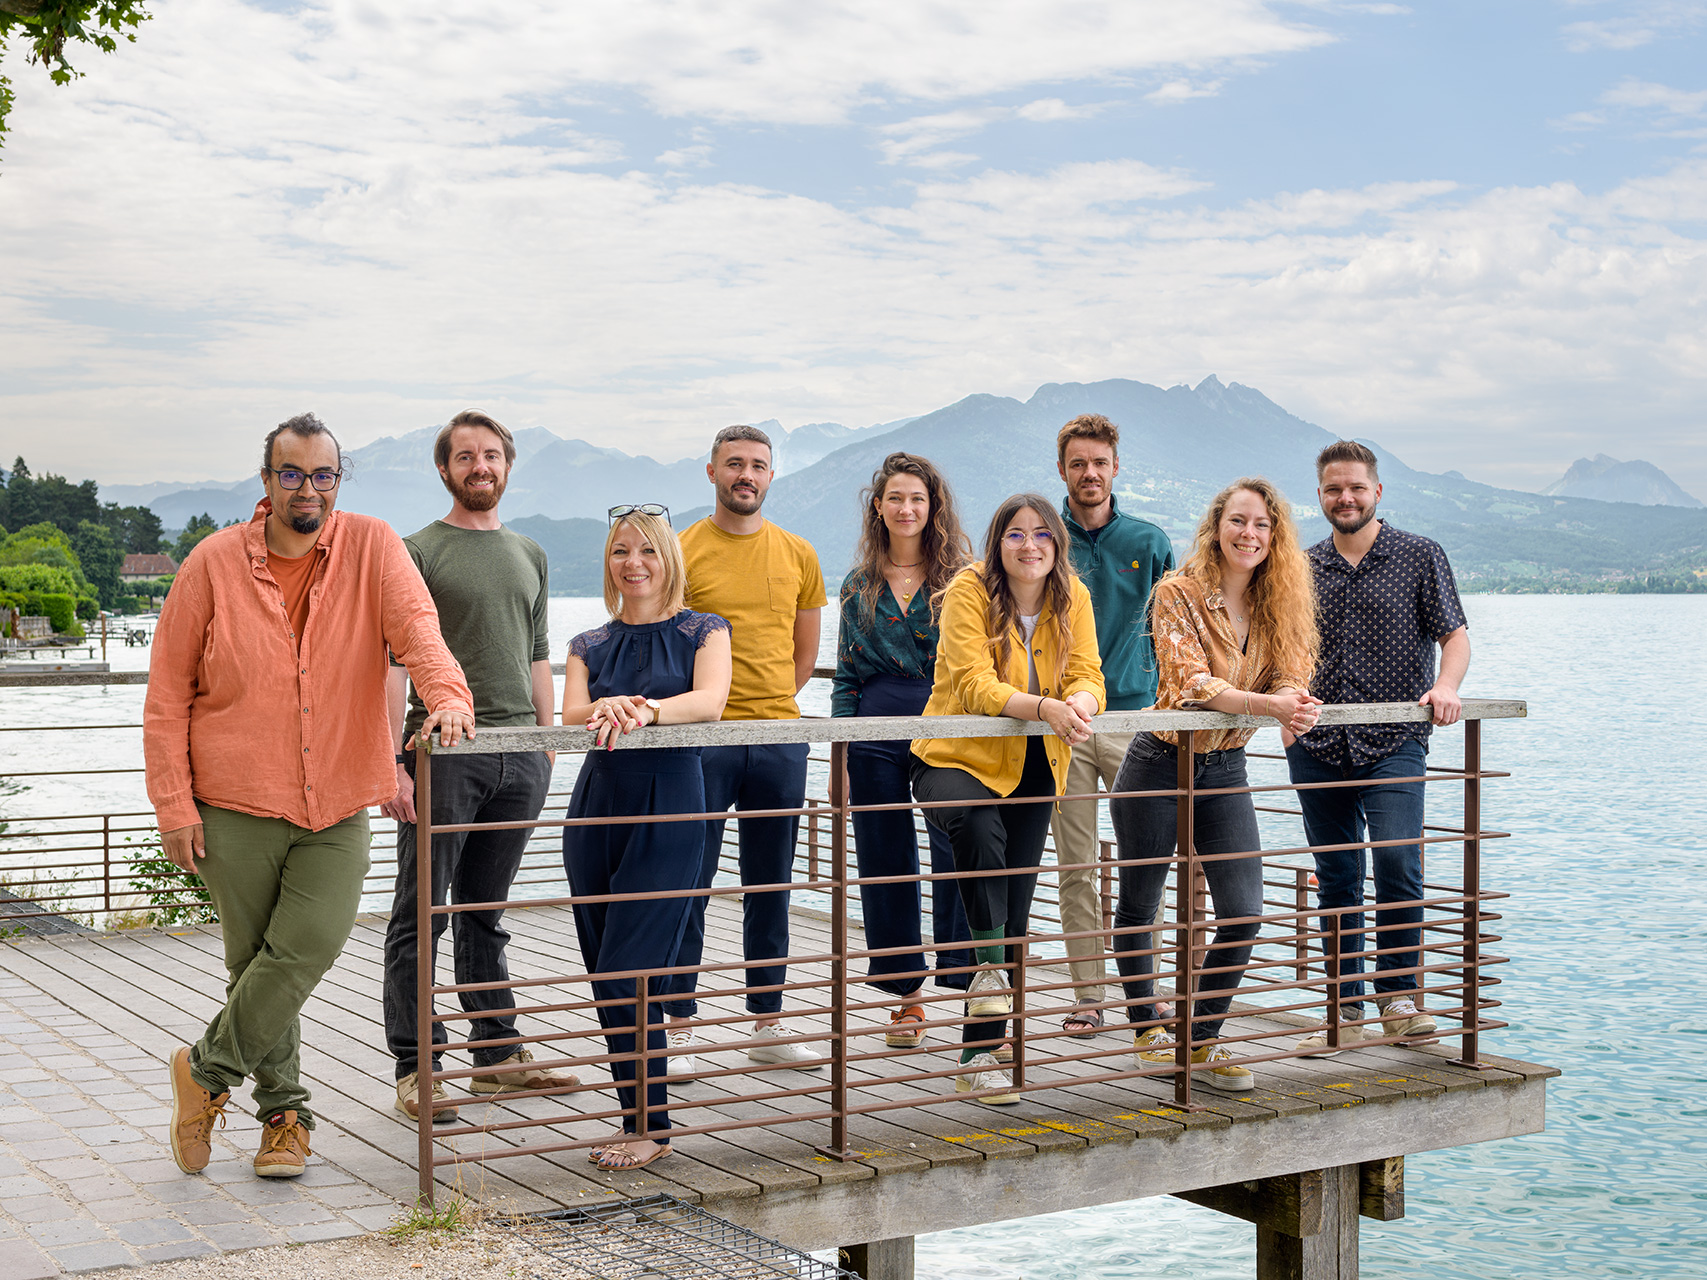 LJN - Paysagiste concepteur - Annecy - Dijon - Photographie équipe 2021 - Lac d'Annecy